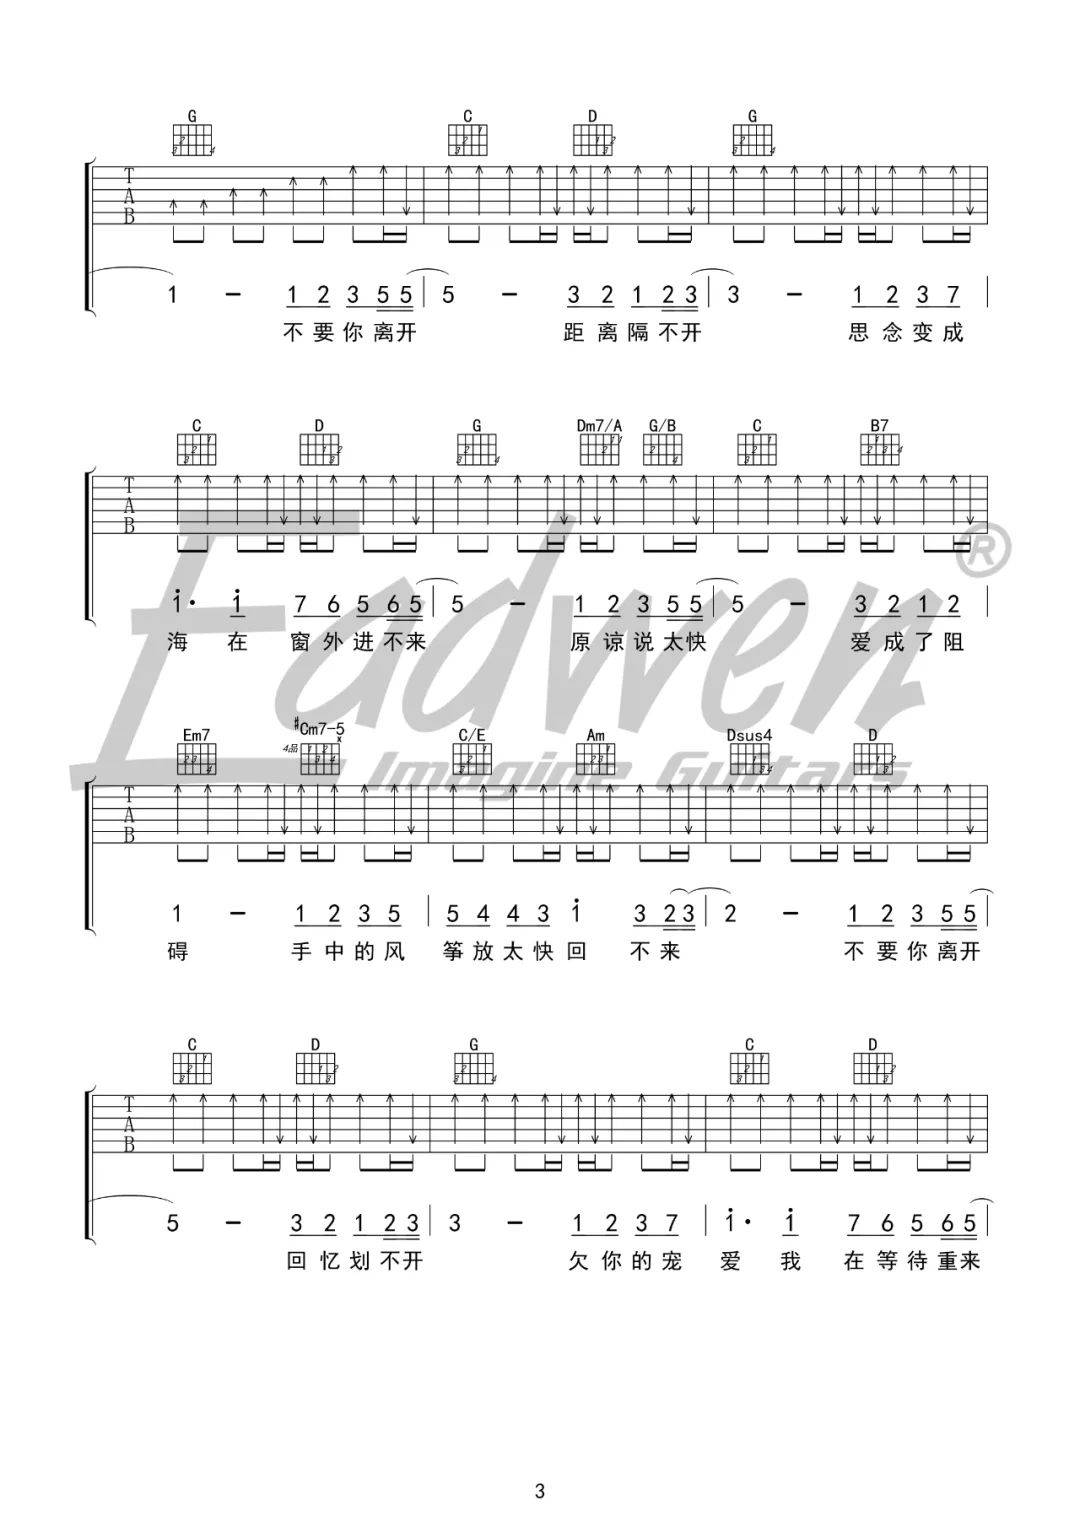 周杰伦——《花海》—吉他教学 吉他谱—爱德文吉他教室(205)